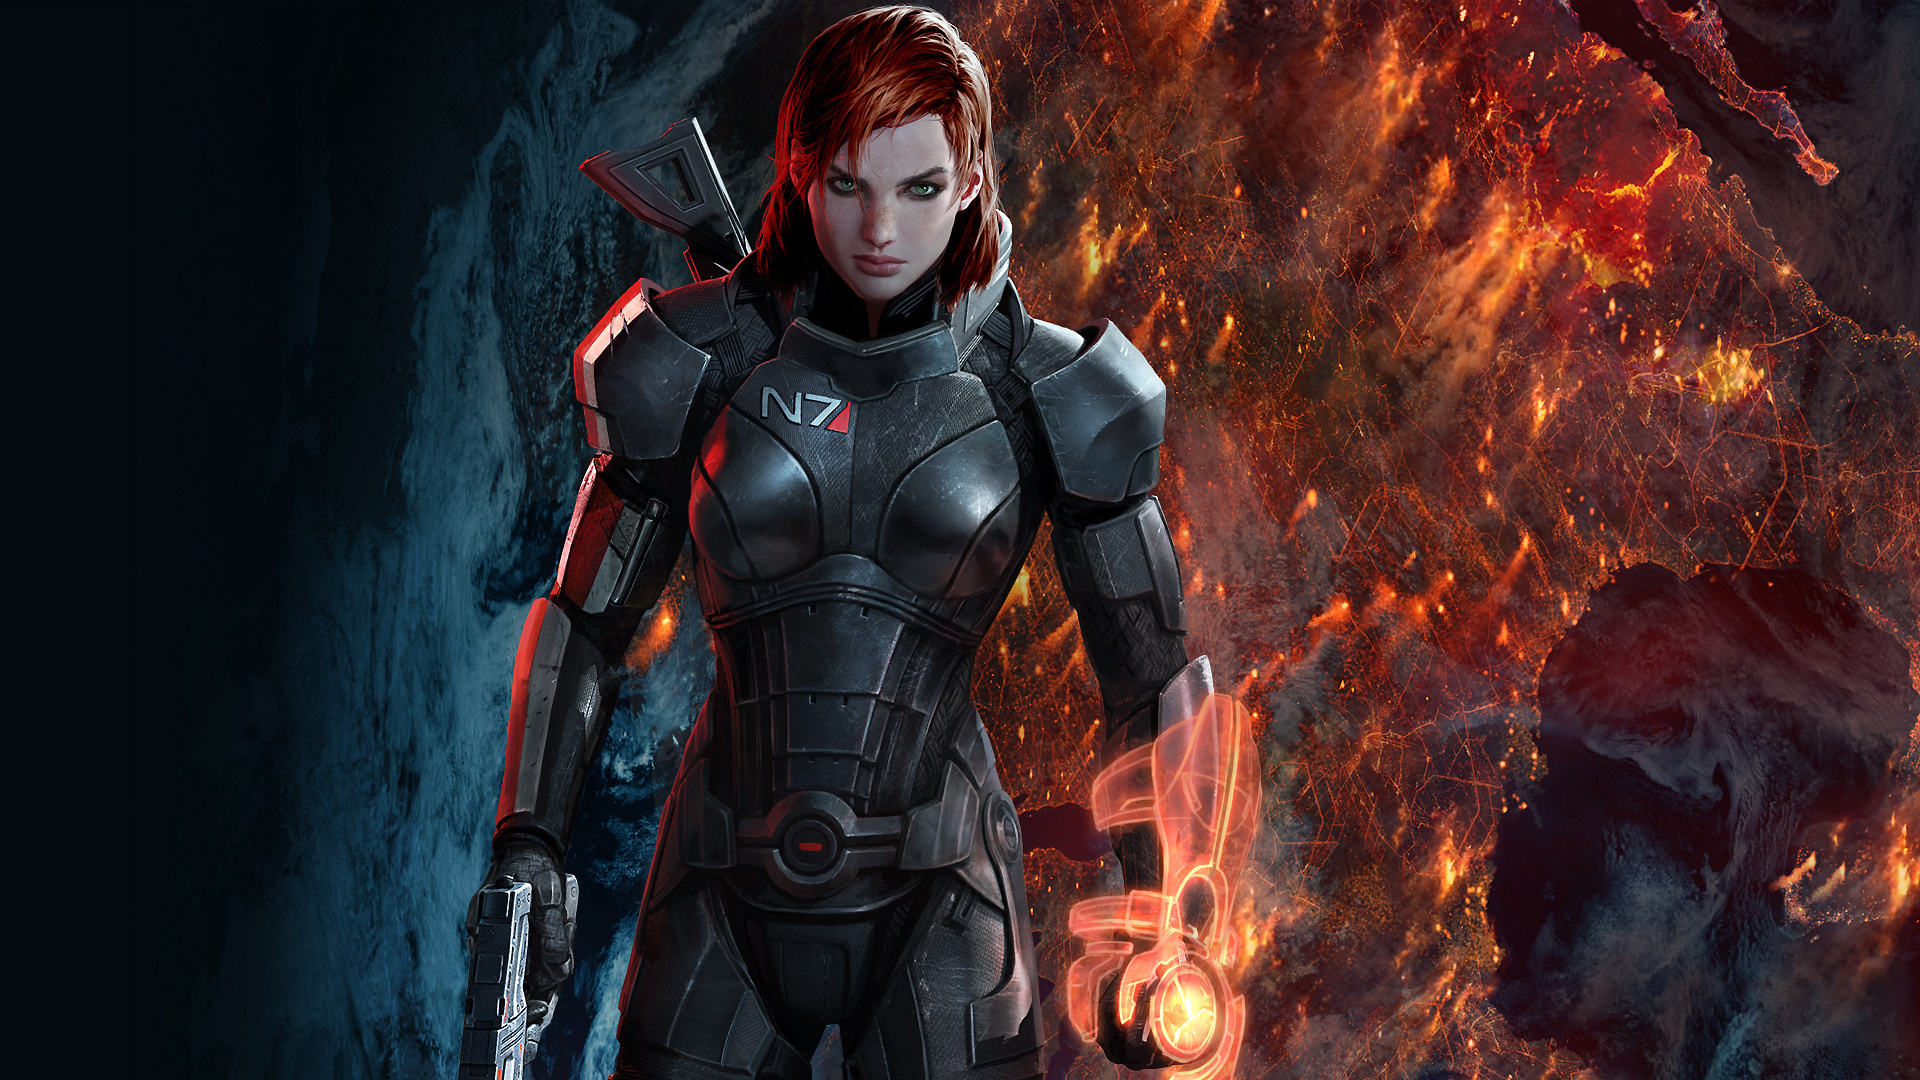 Mass Effect 3, Stunning backgrounds, Immersive visuals, Epic battles, 1920x1080 Full HD Desktop